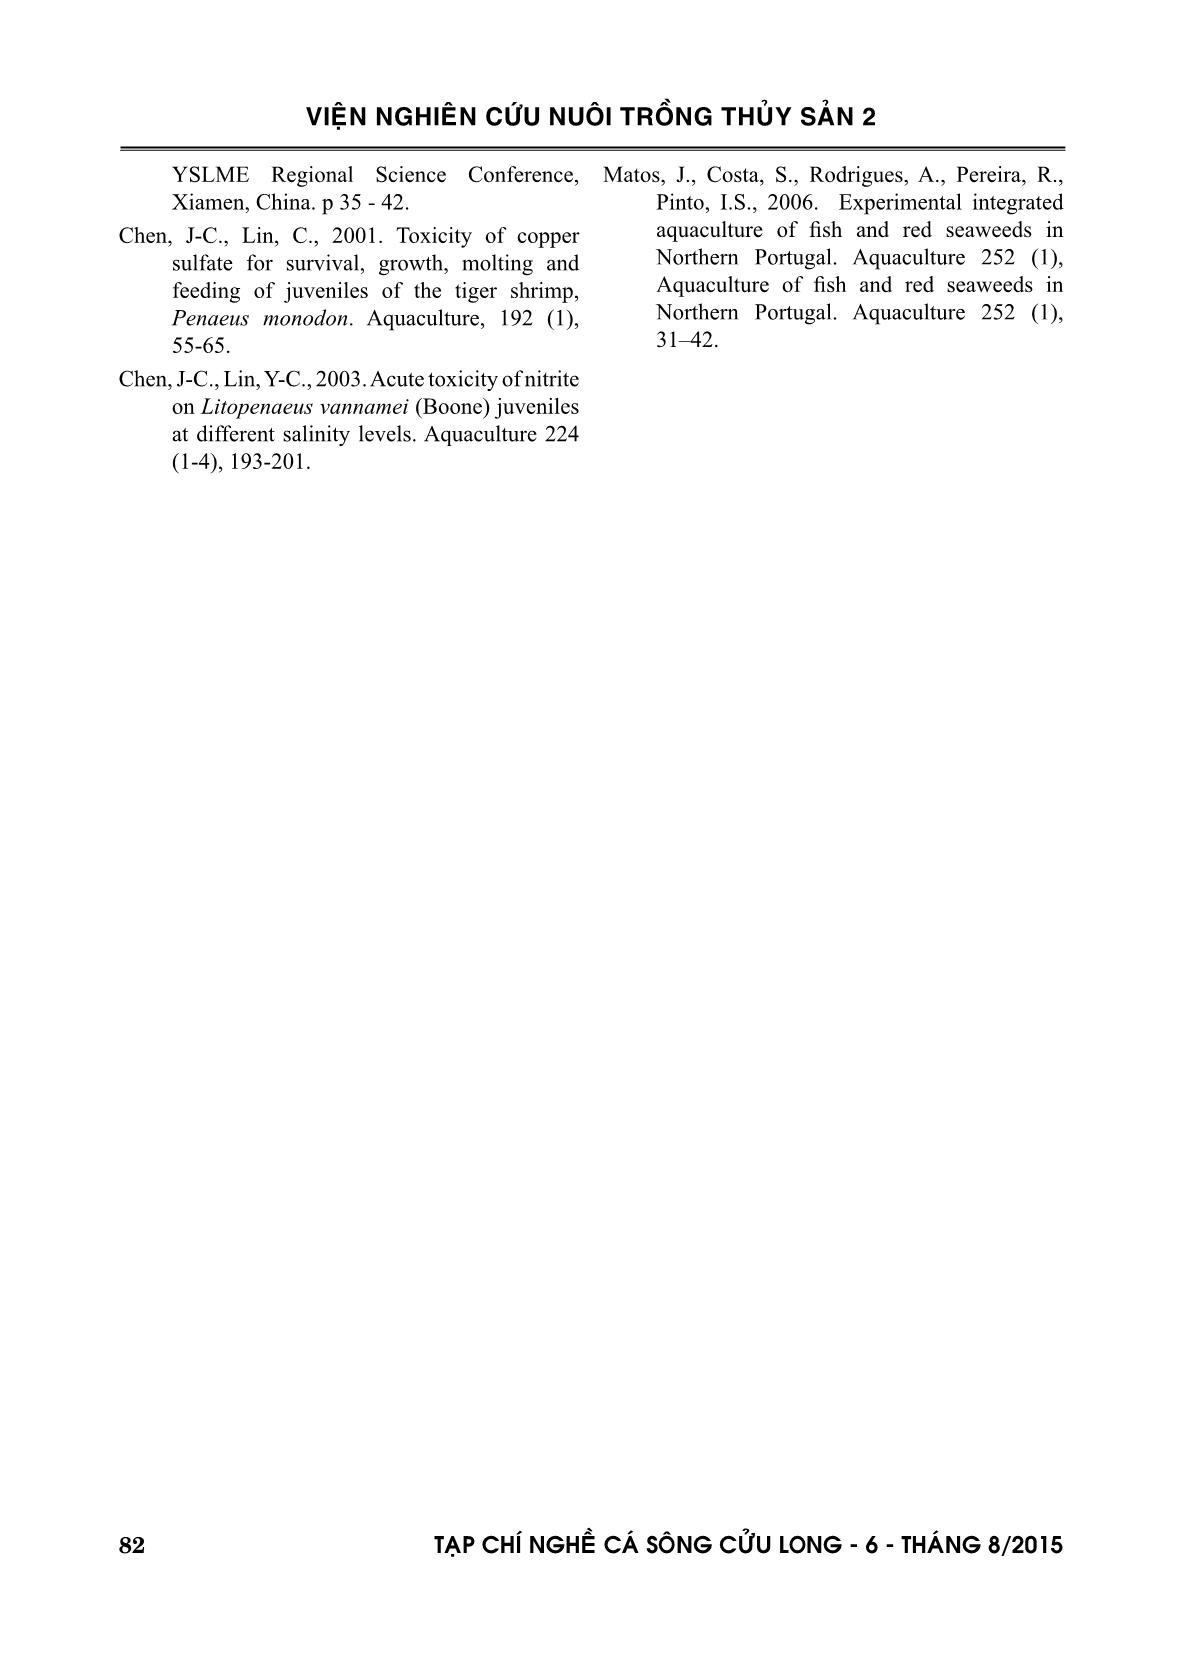 Ứng dụng công nghệ biofloc nuôi thâm canh tôm he chân trắng (Litopenaeus vannamei) vào phát triển sản xuất trang 8